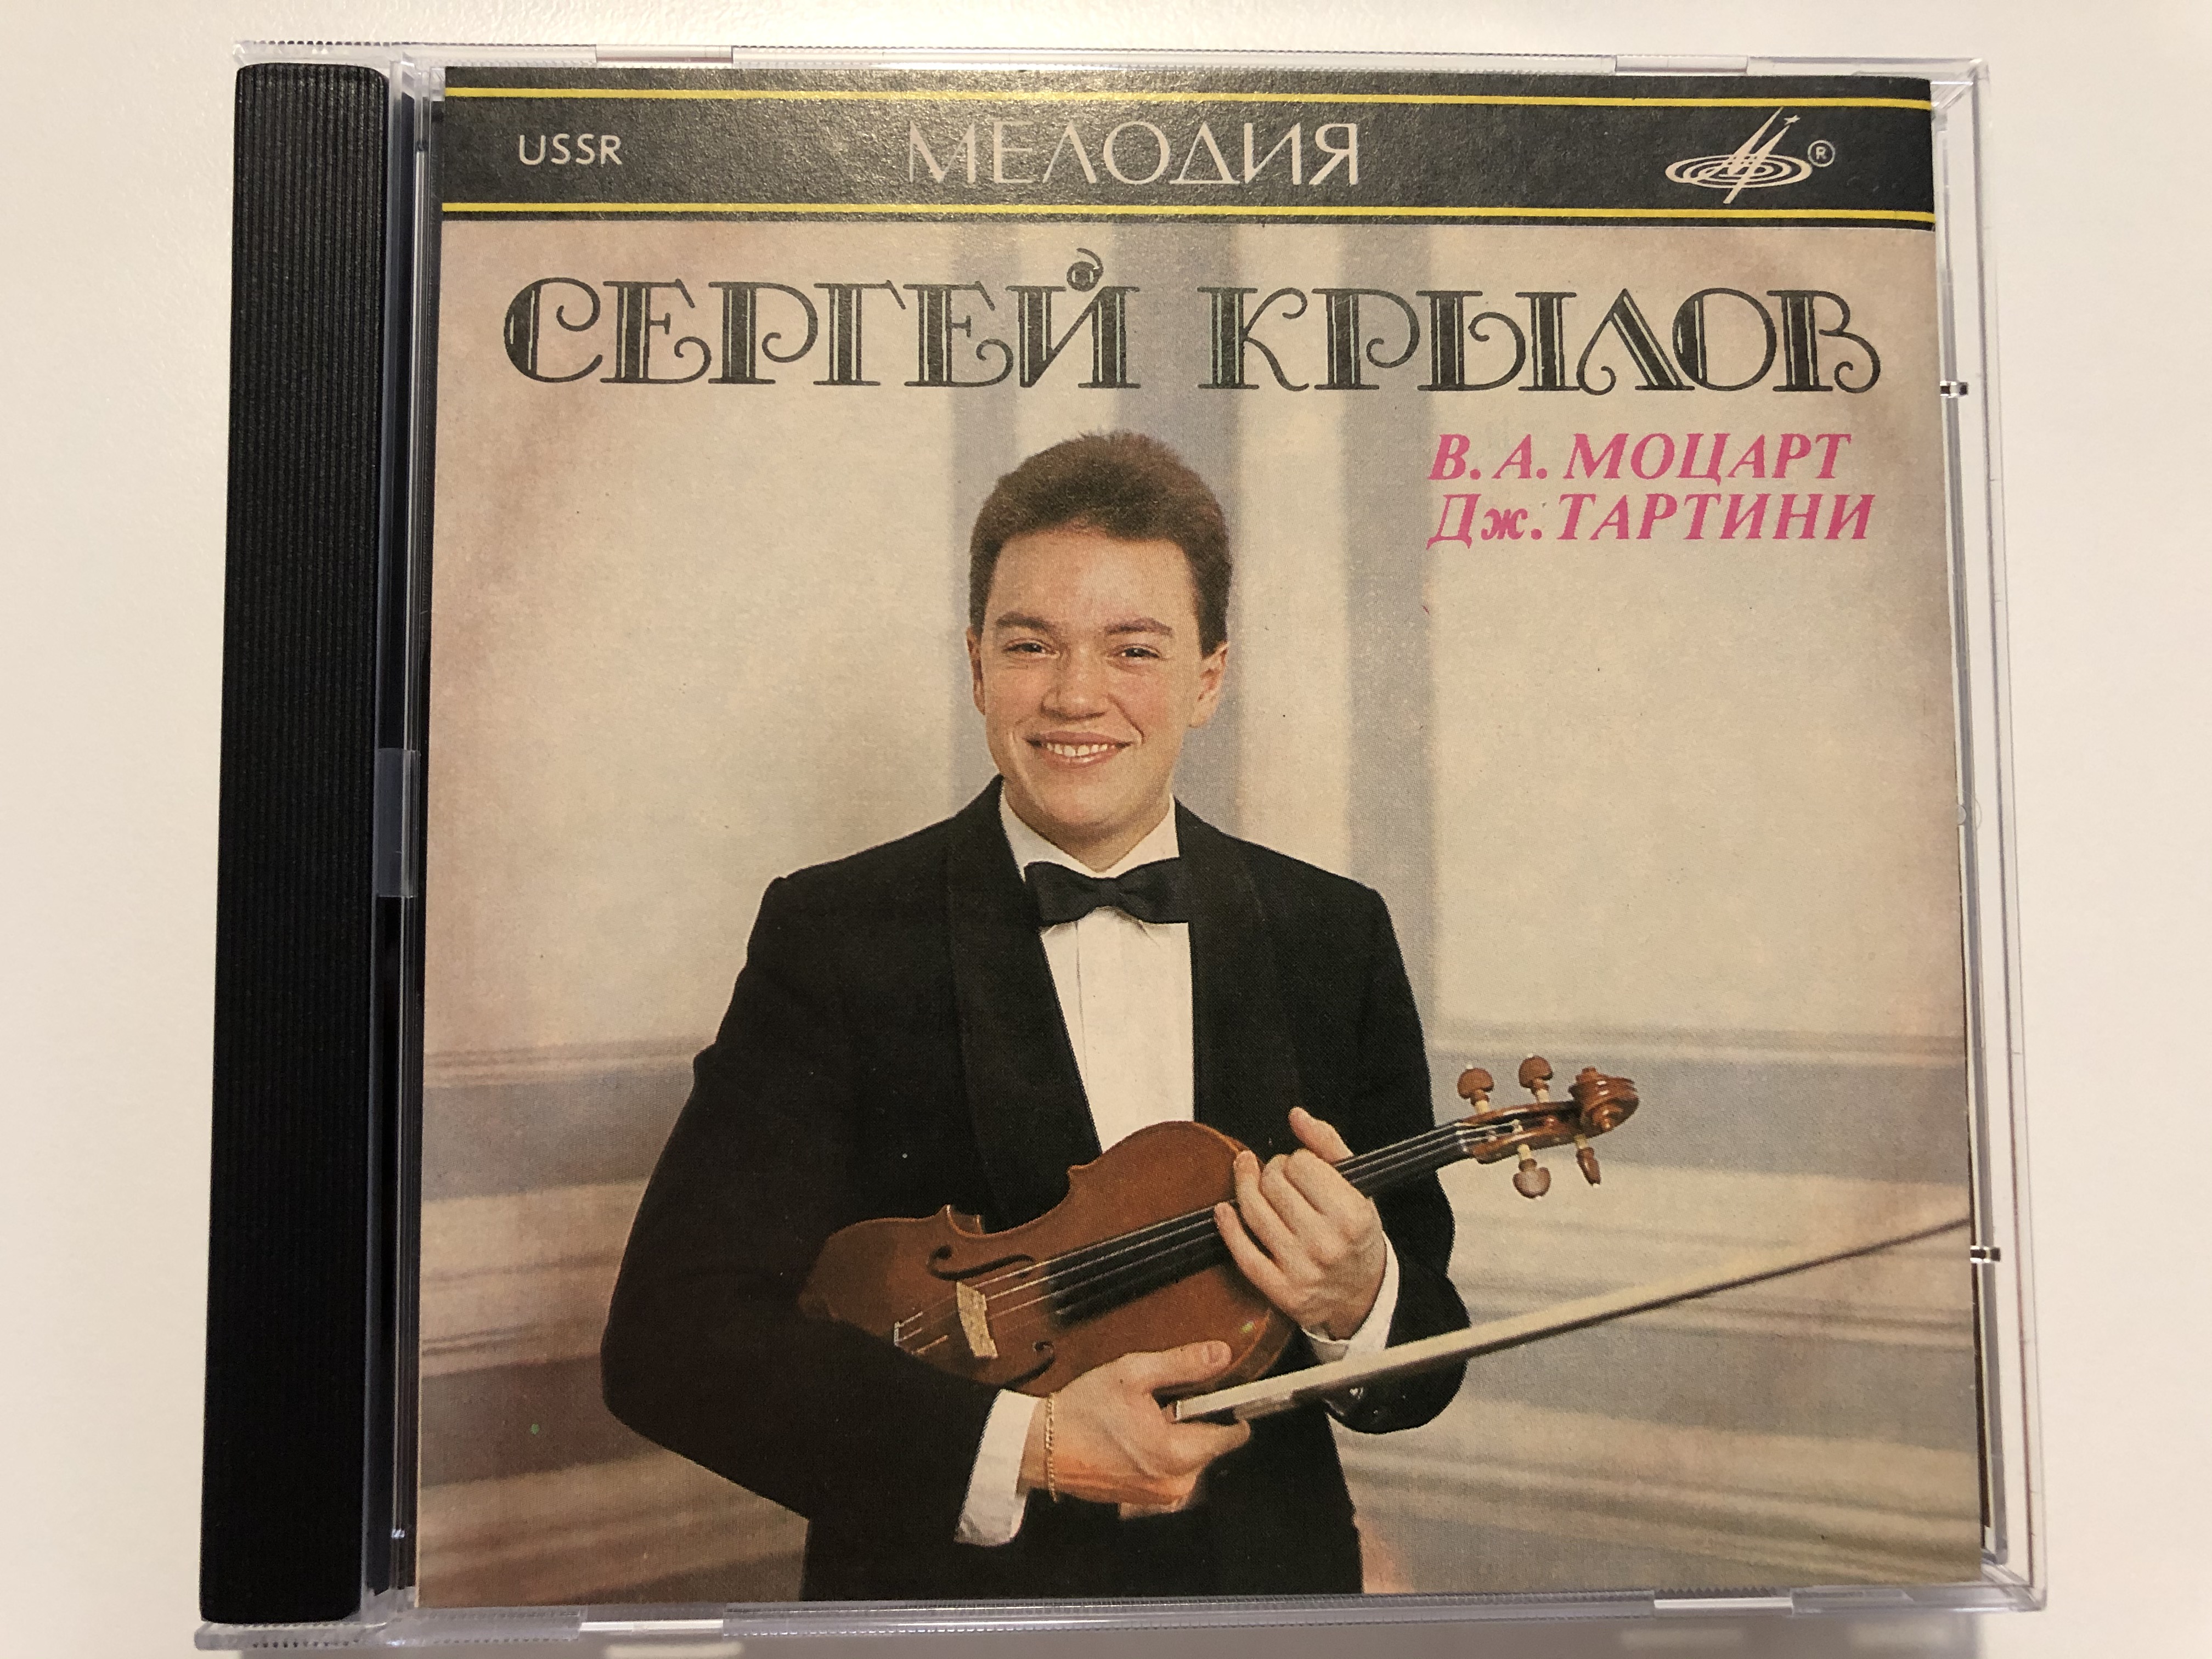 sergei-krylov-w.-a.-mozart-g.-tartini-audio-cd-1990-sucd-10-00016-1-.jpg